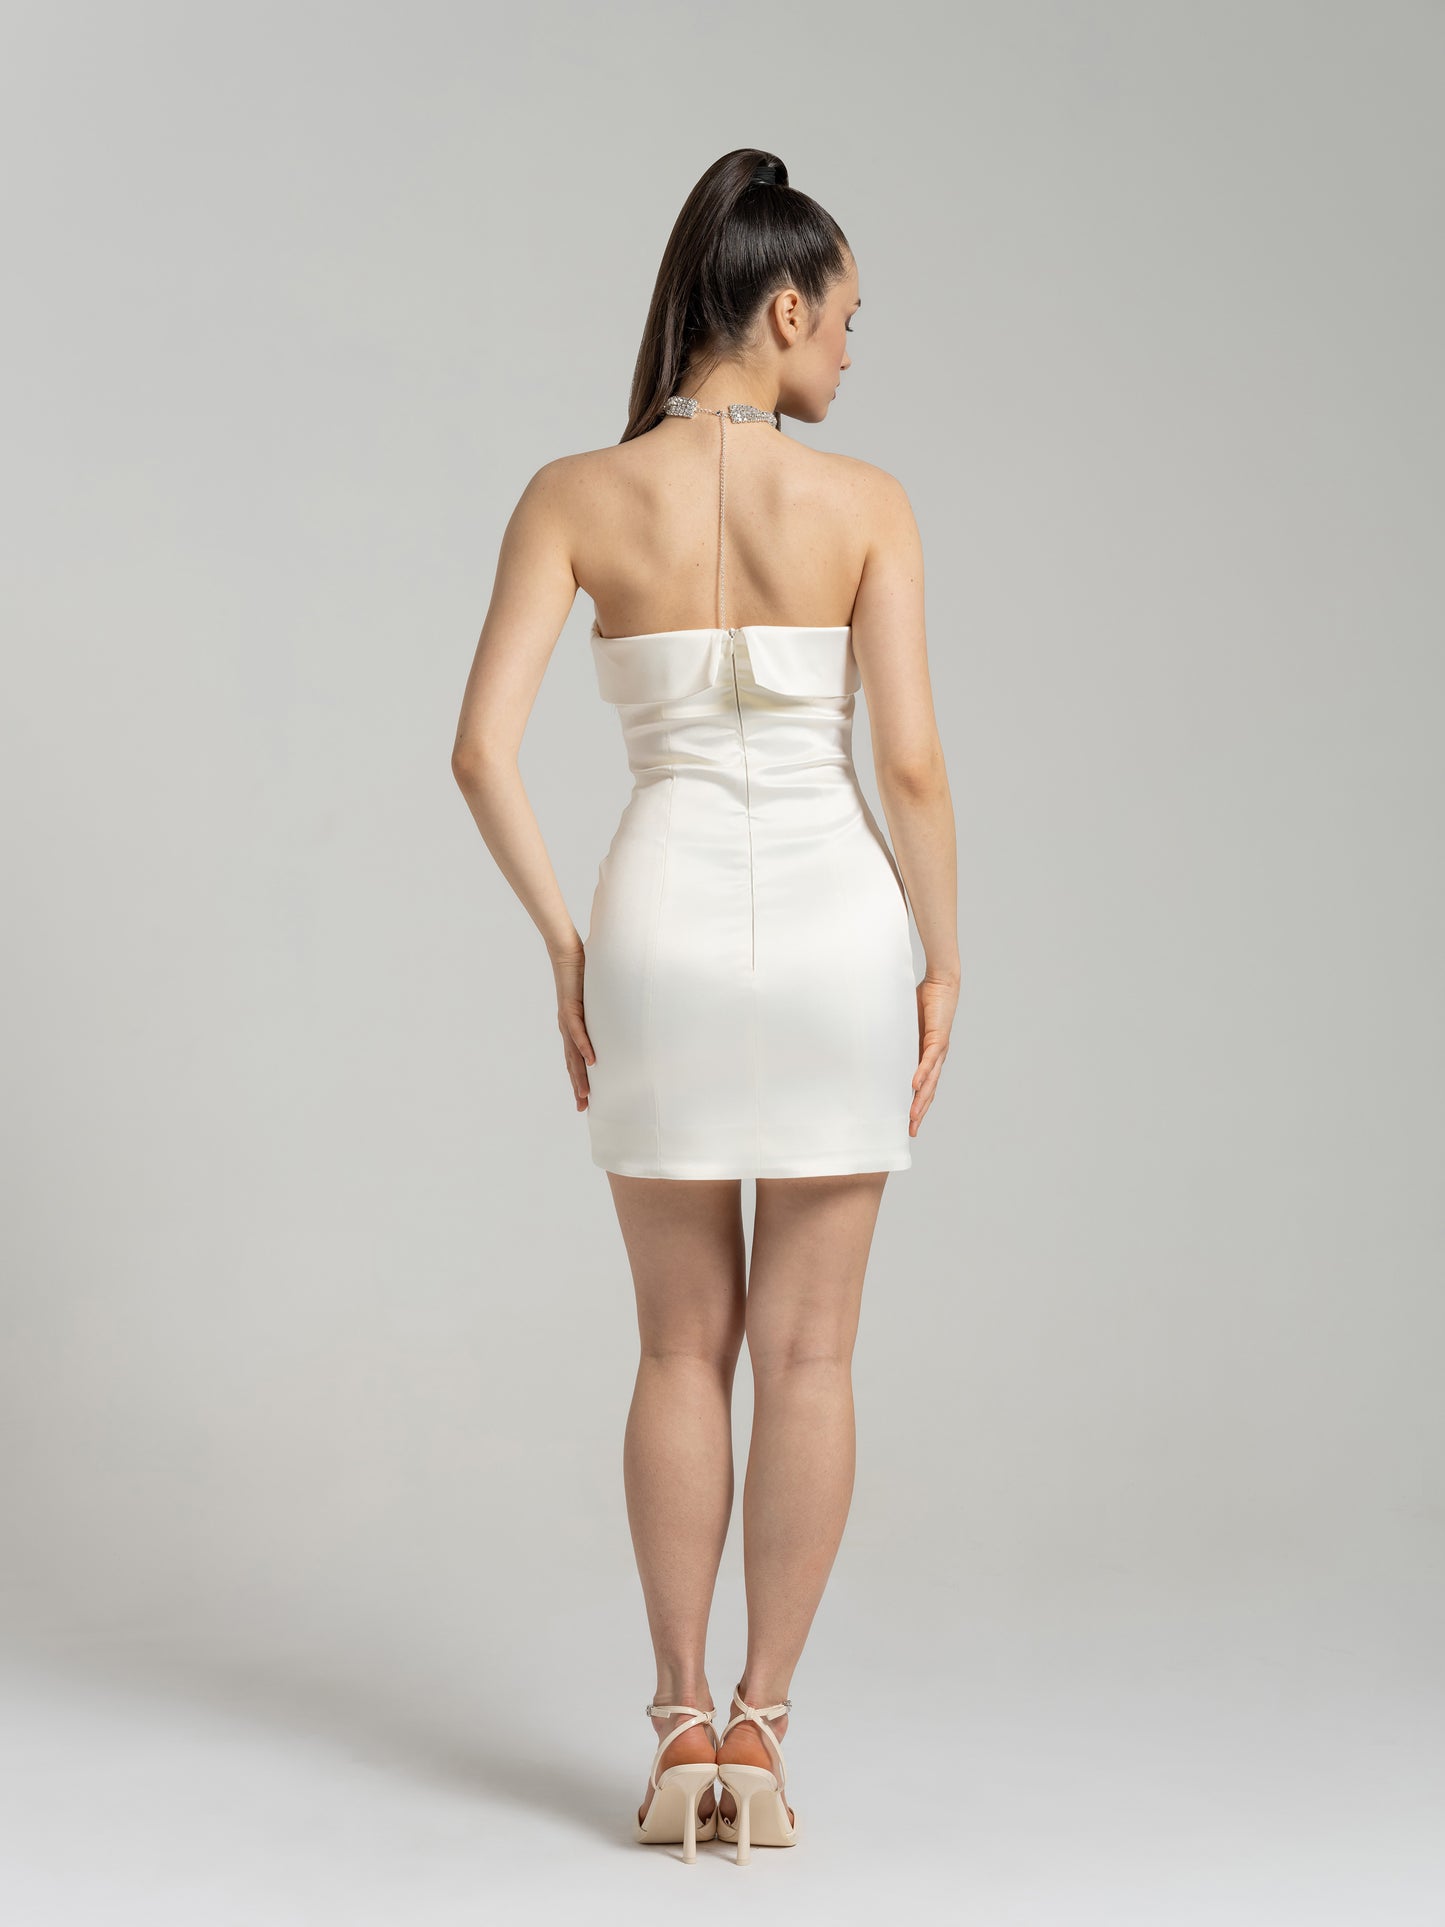 Romantic Allure Satin Mini Dress -  Pearl White